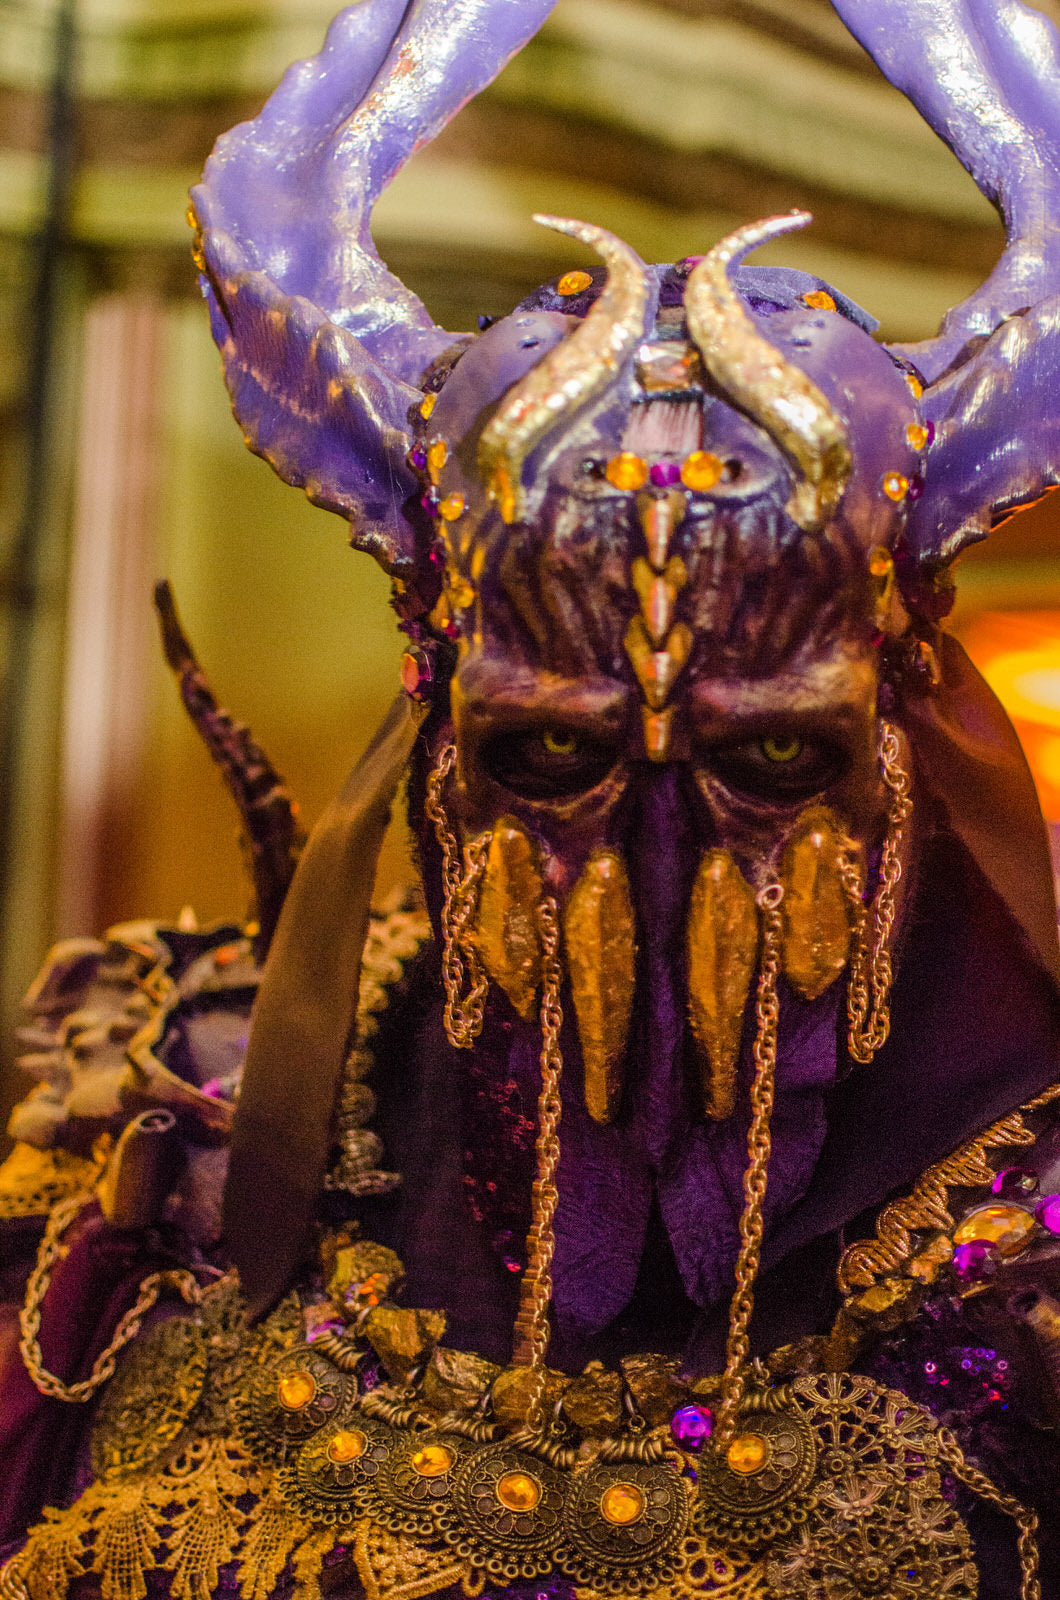 Myth Masque Masquerade 2014